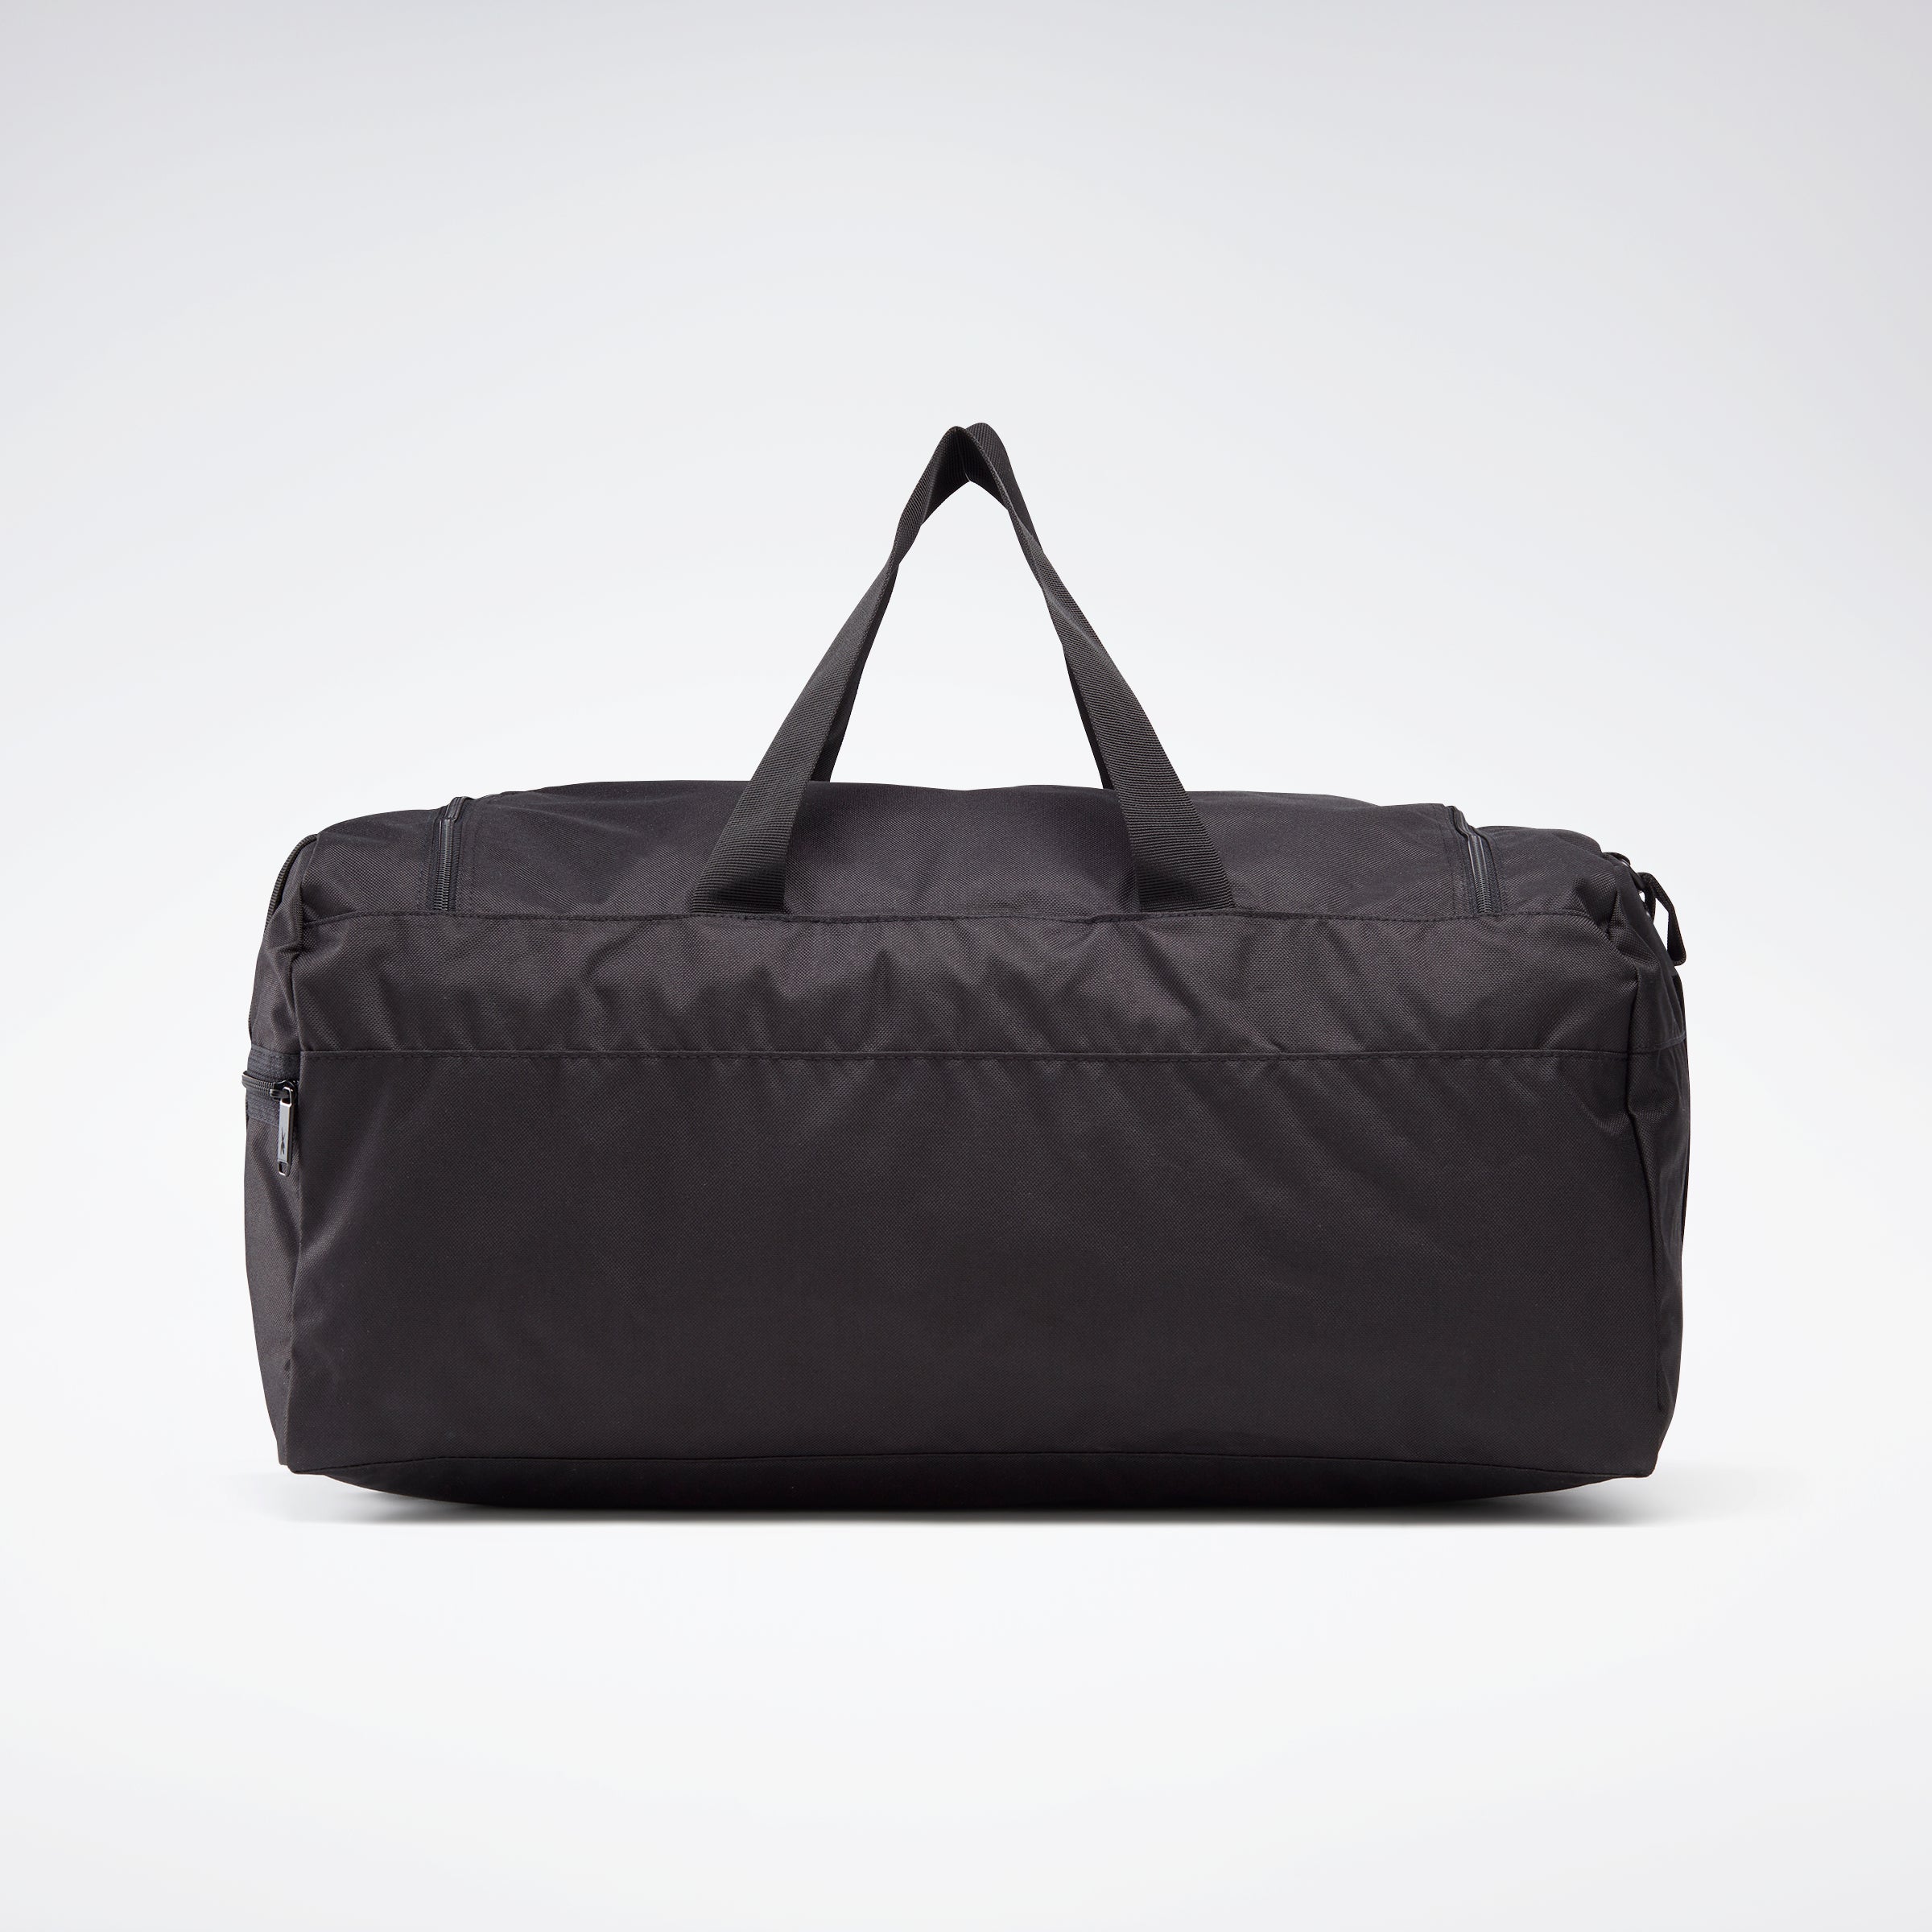 NIKE medium size duffel bag gym bag maroon burgundy | eBay